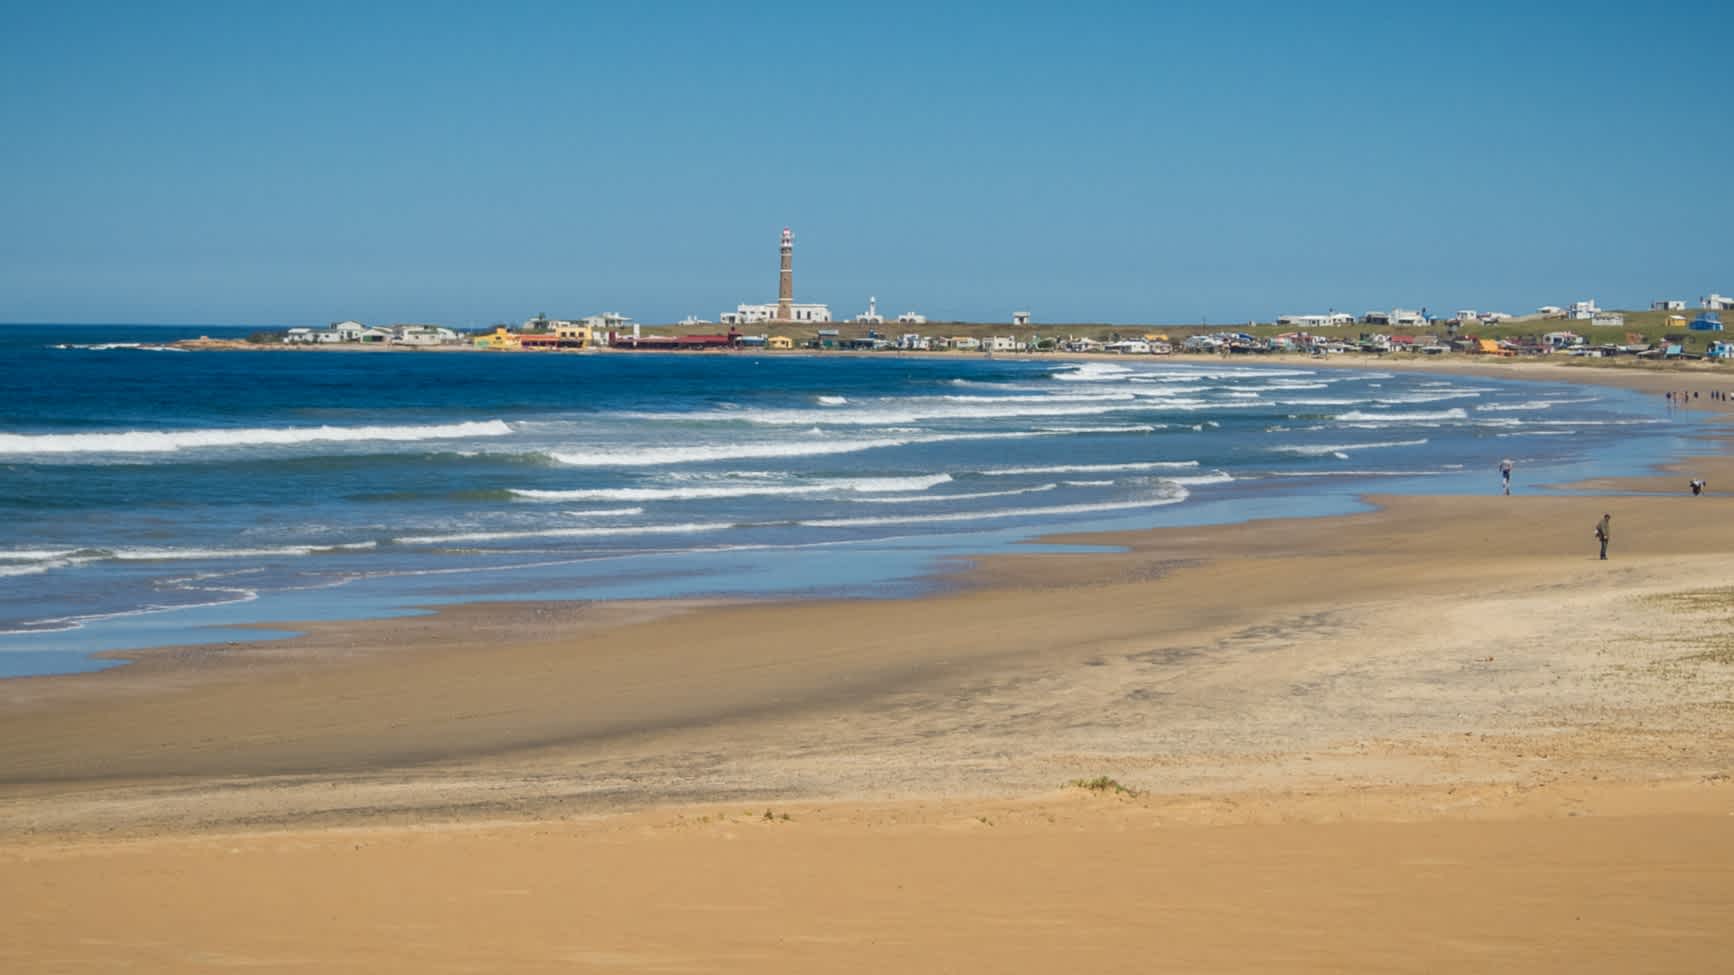 Vue panoramique de la plage de La Calavera à Cabo Polonio, Uruguay

